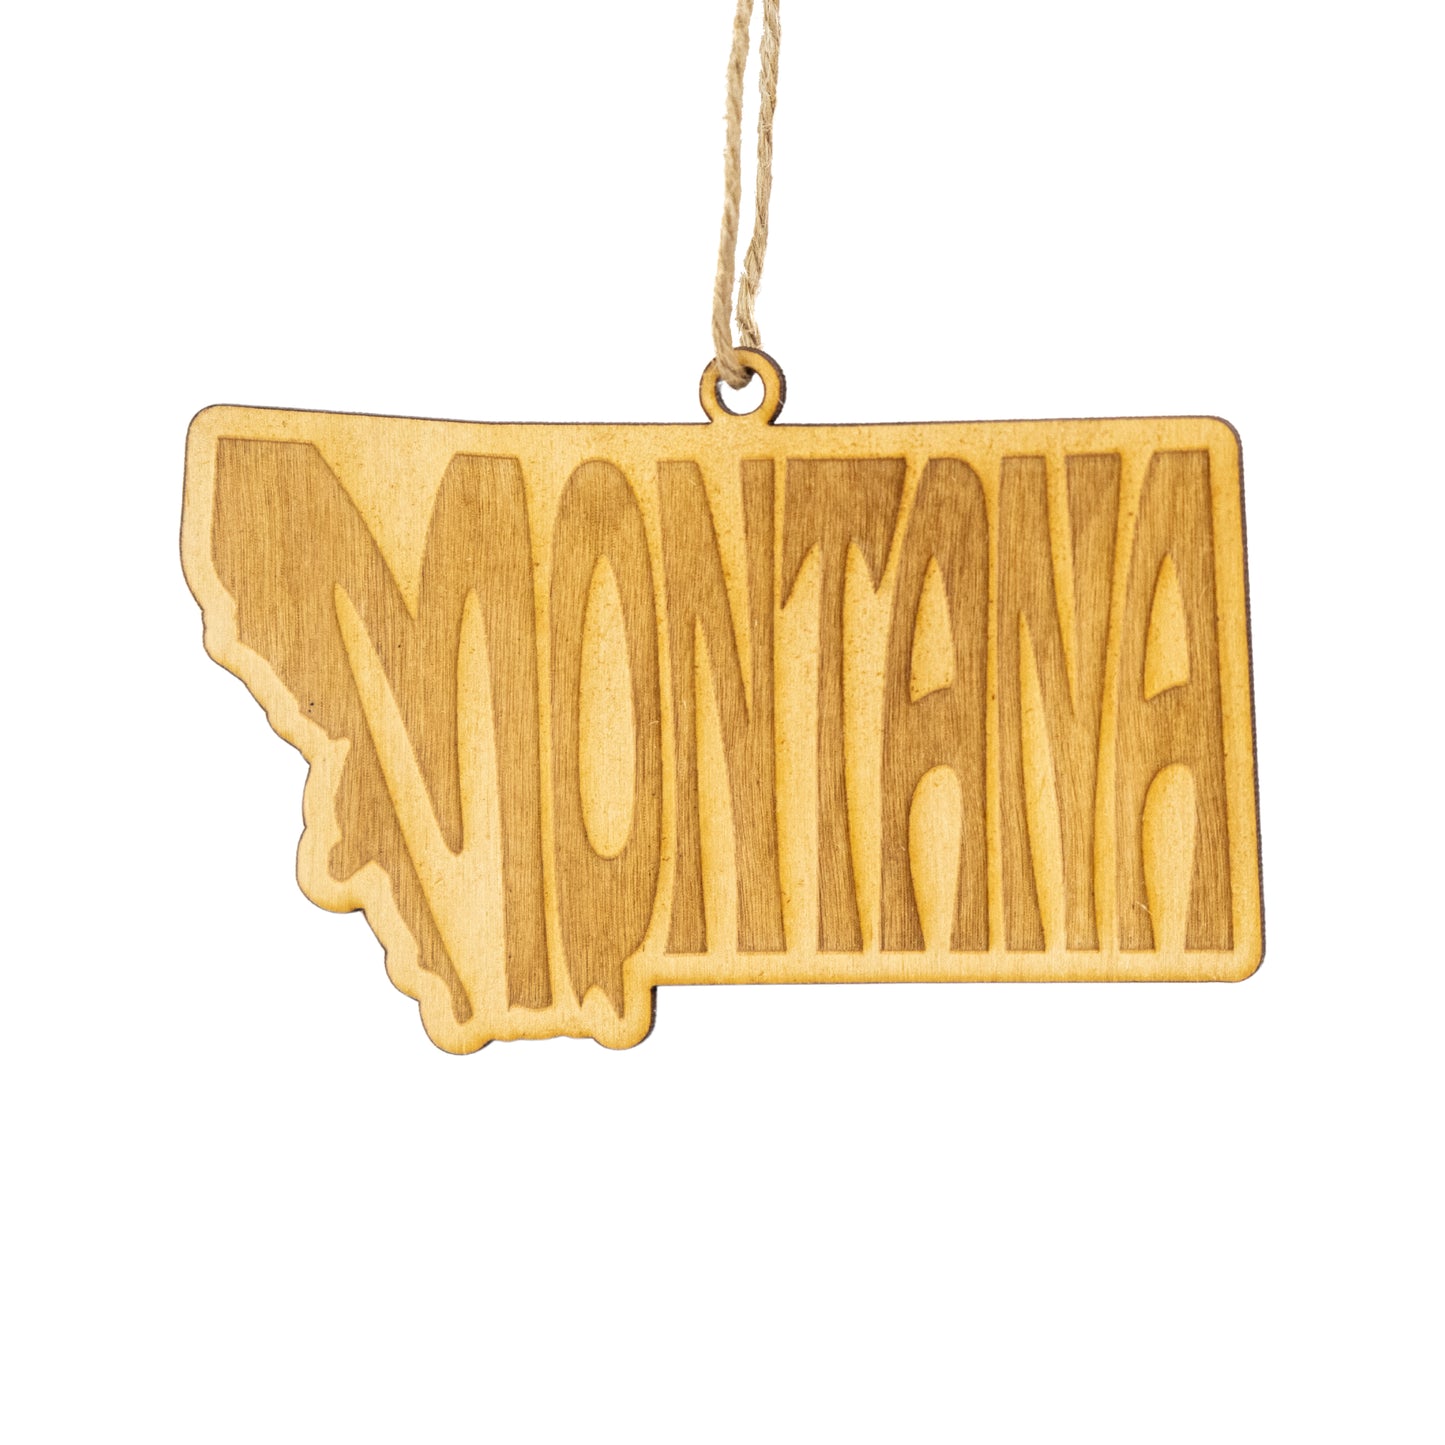 Montana State Name Ornament